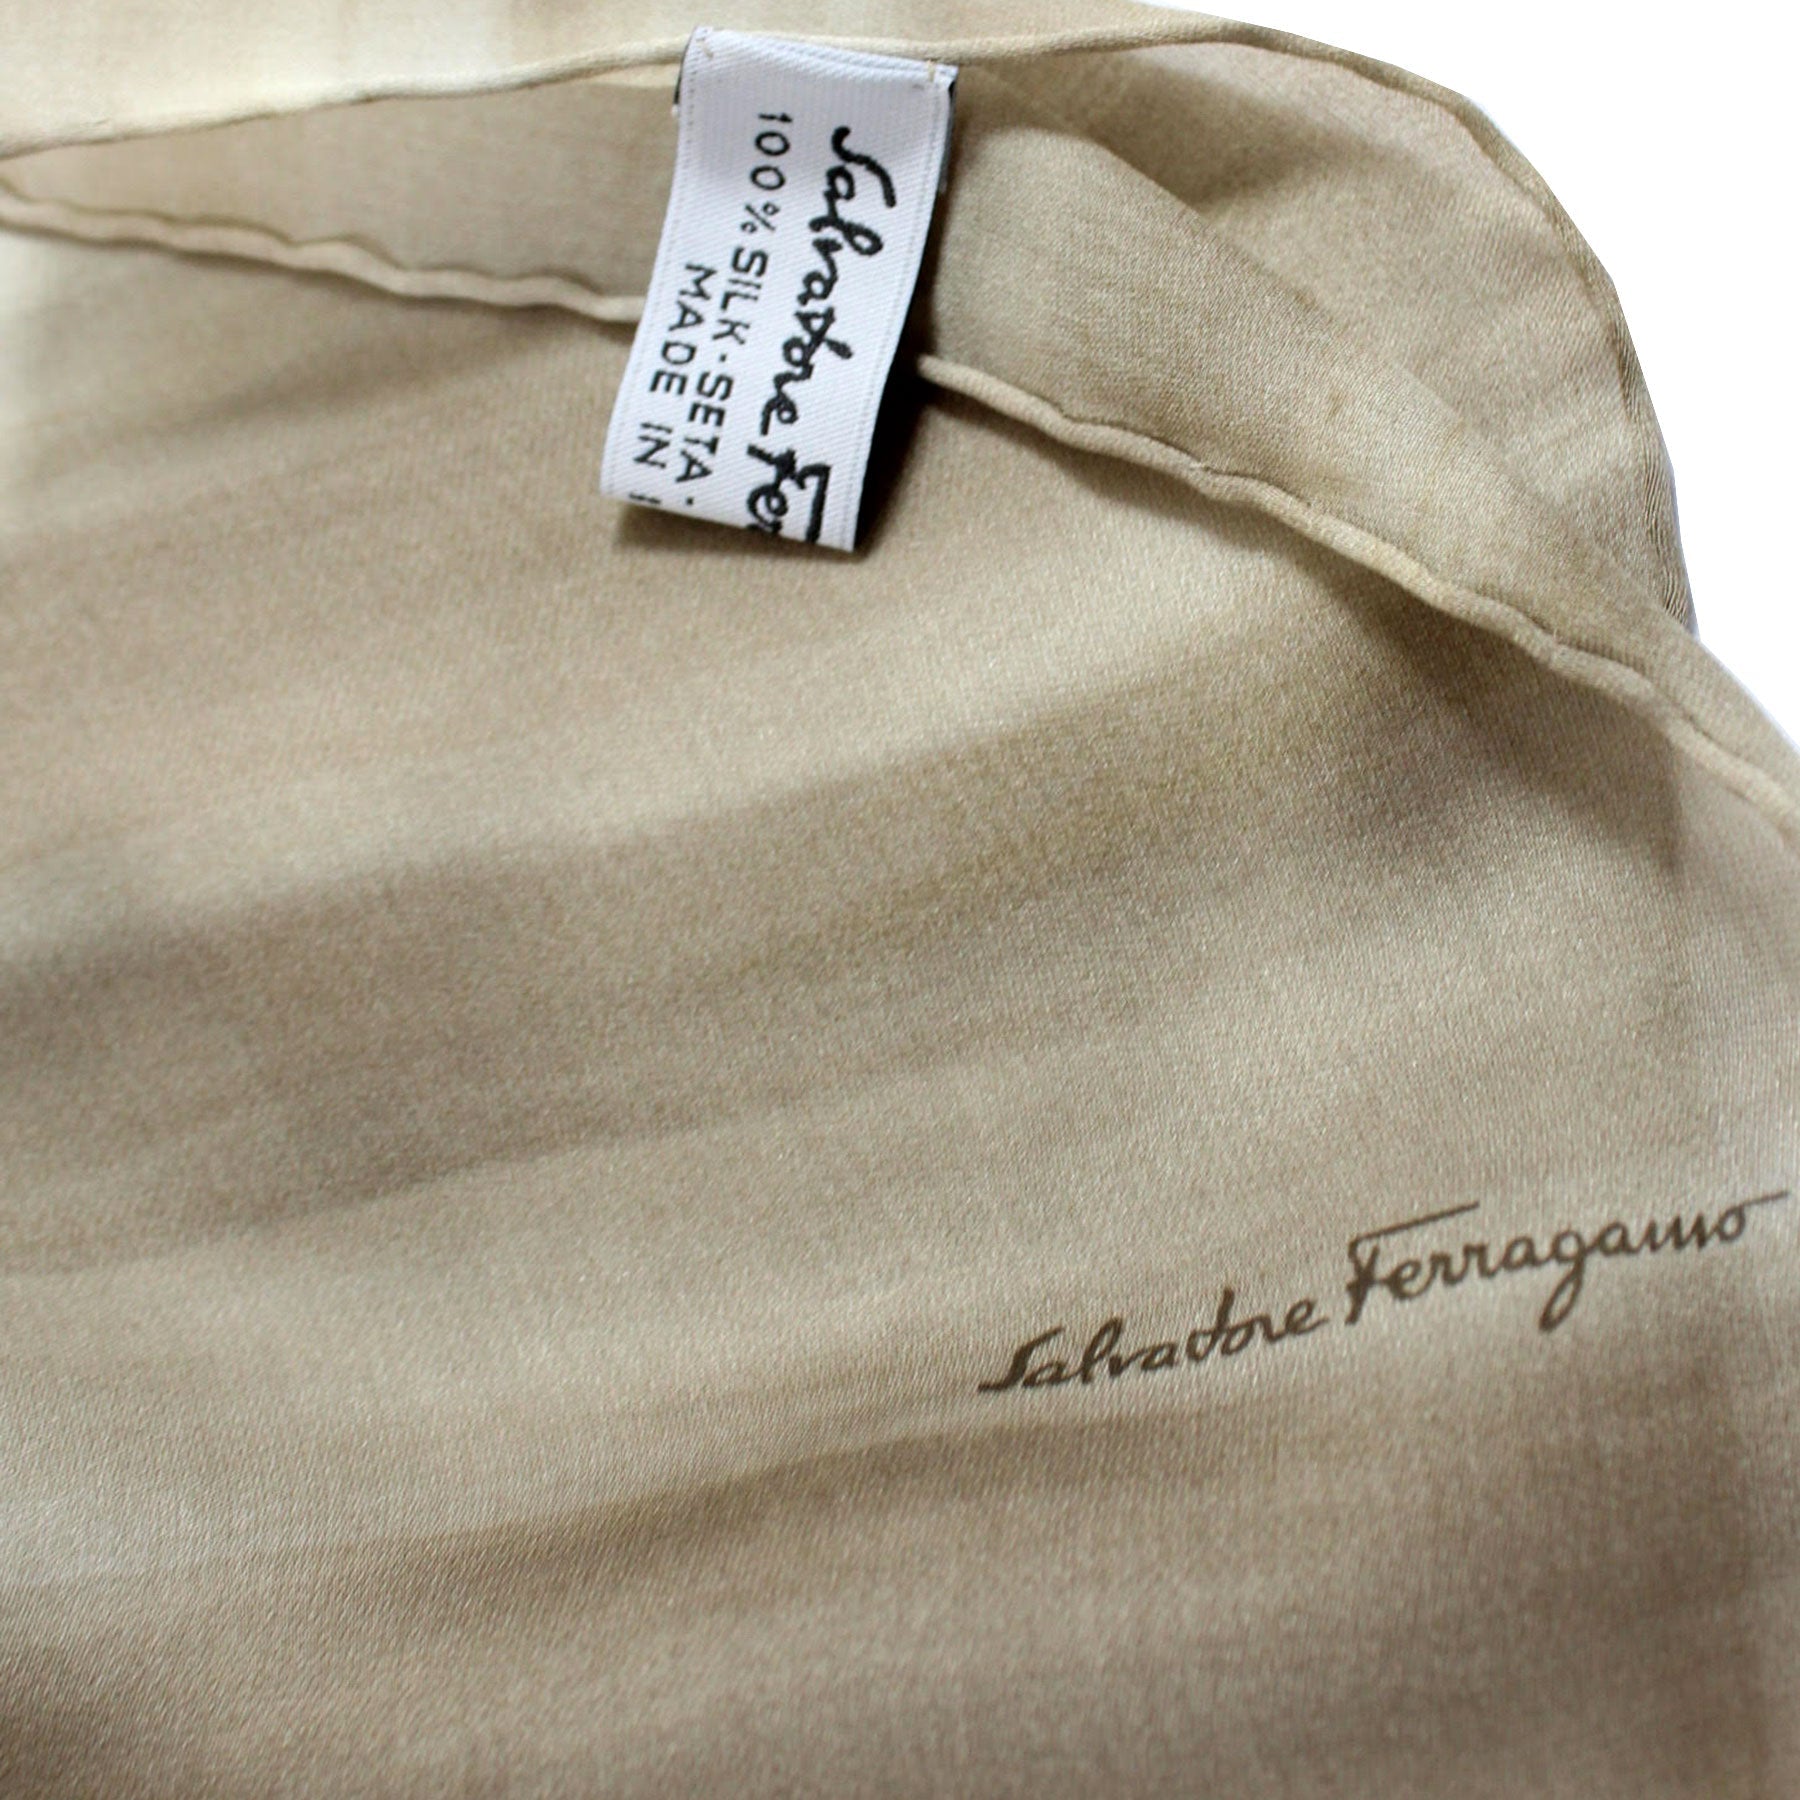 Salvatore Ferragamo Scarf Brown Gray Design - Chiffon Silk Designer Shawl